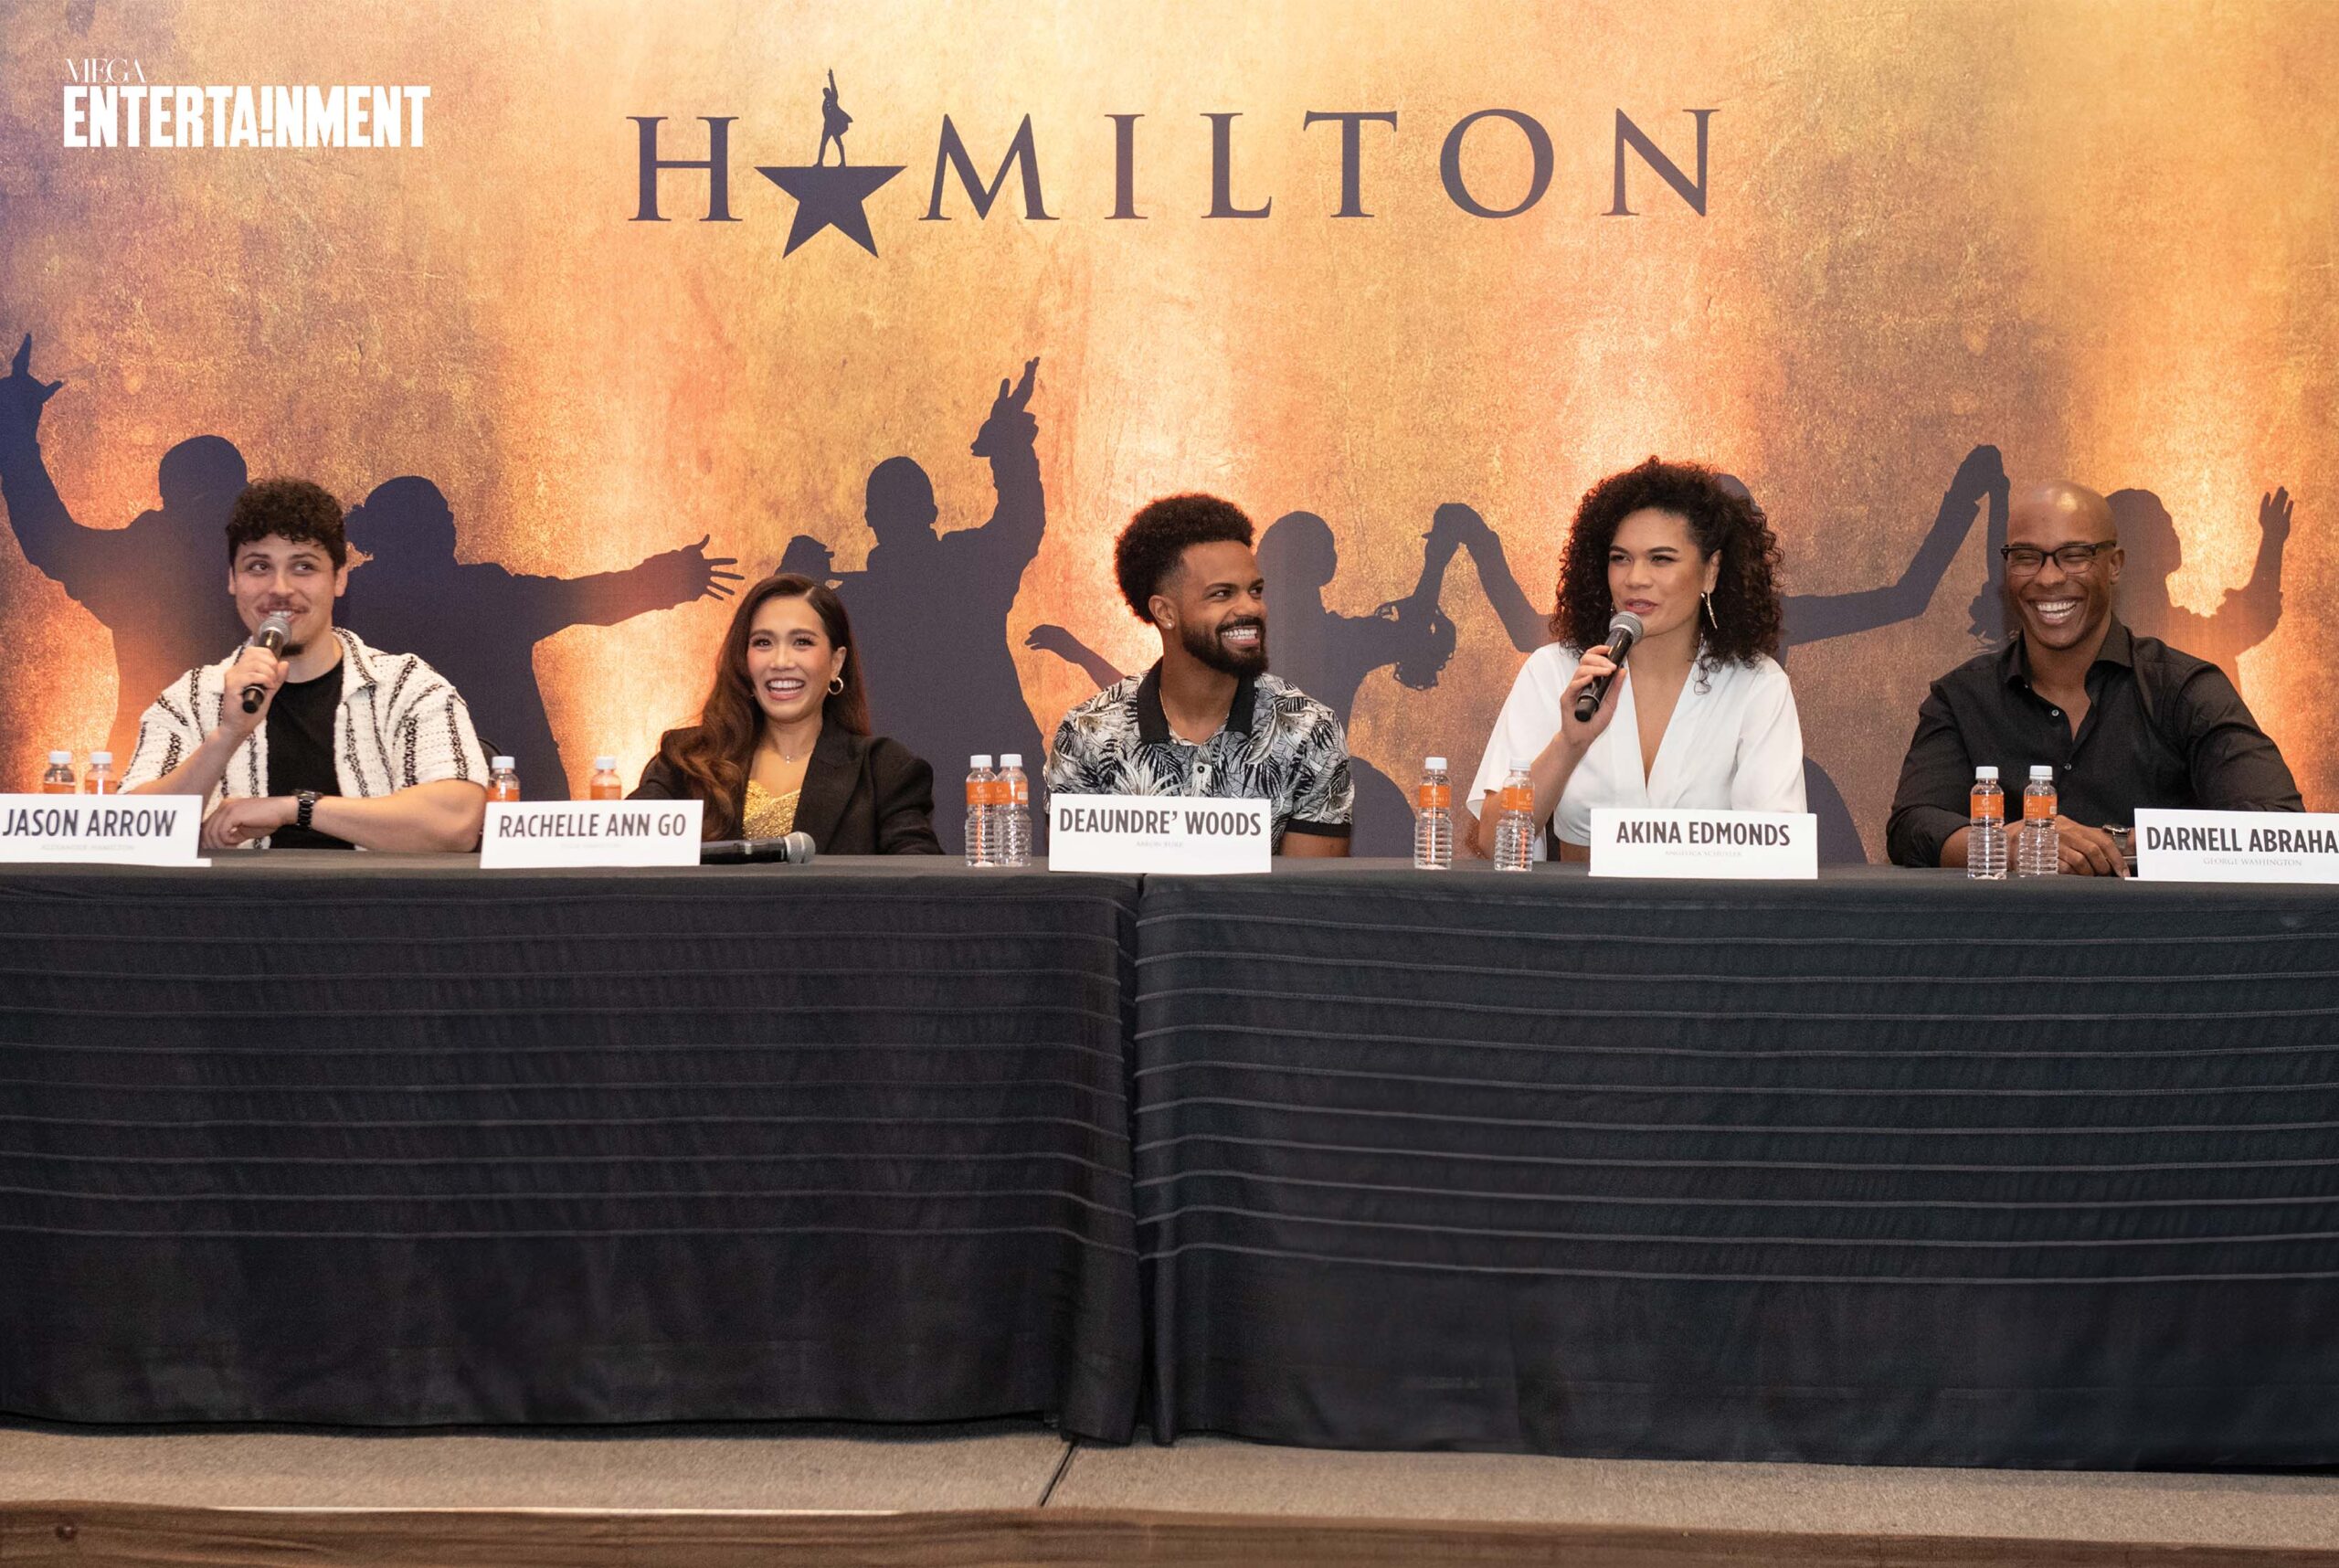 The Hamilton International Cast Jason Arrow, Deaundre’ Woods, Akina Edmonds, Darnell Abraham, and Rachelle Ann Go